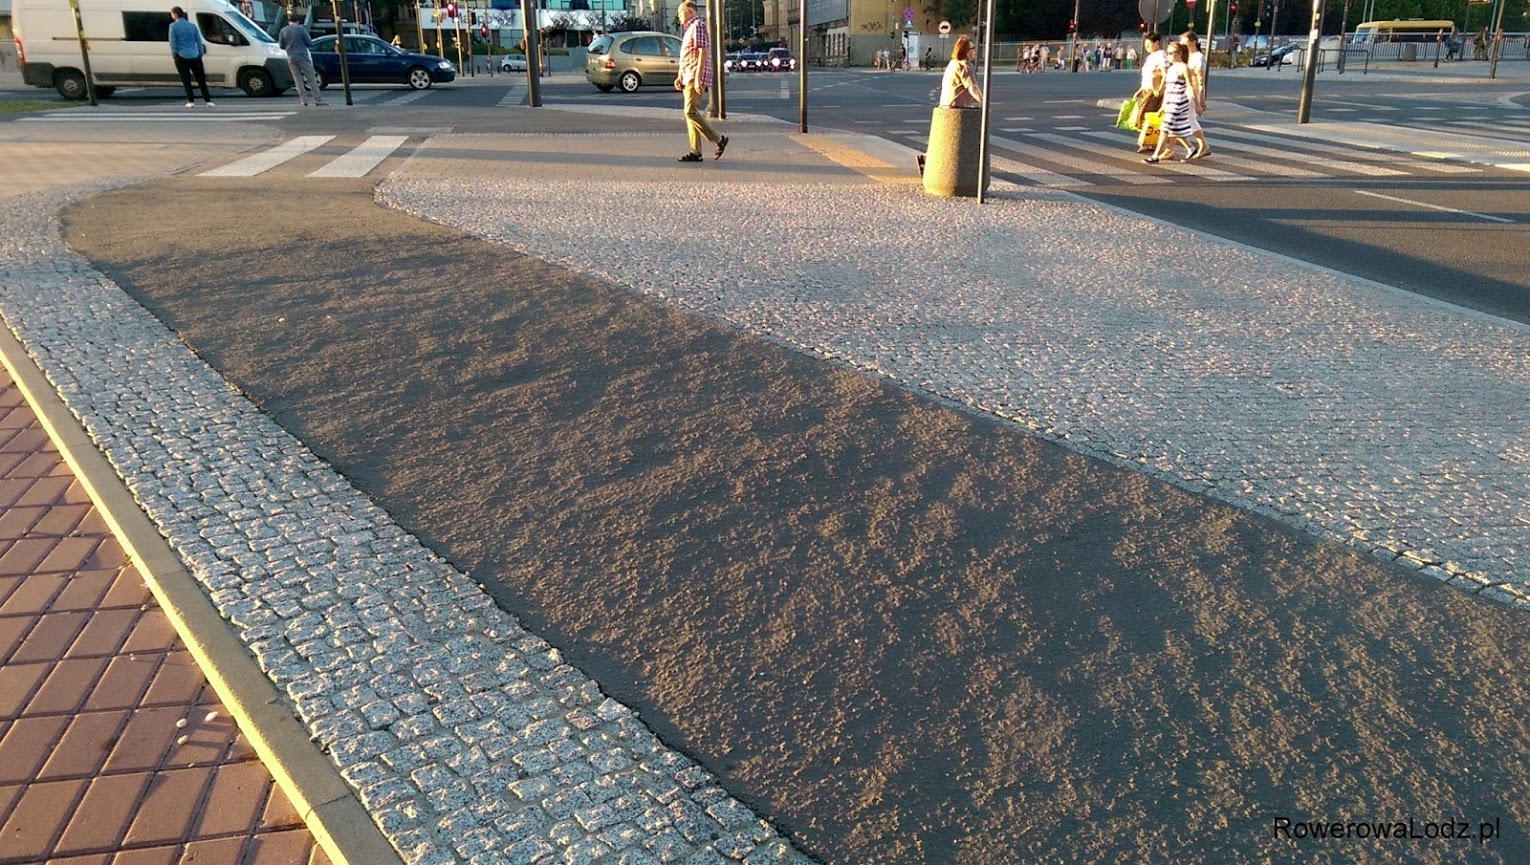 Ciekawostka zaobserwowana podczas zachodu słońca - czy tak powinien wyglądać równy asfalt?